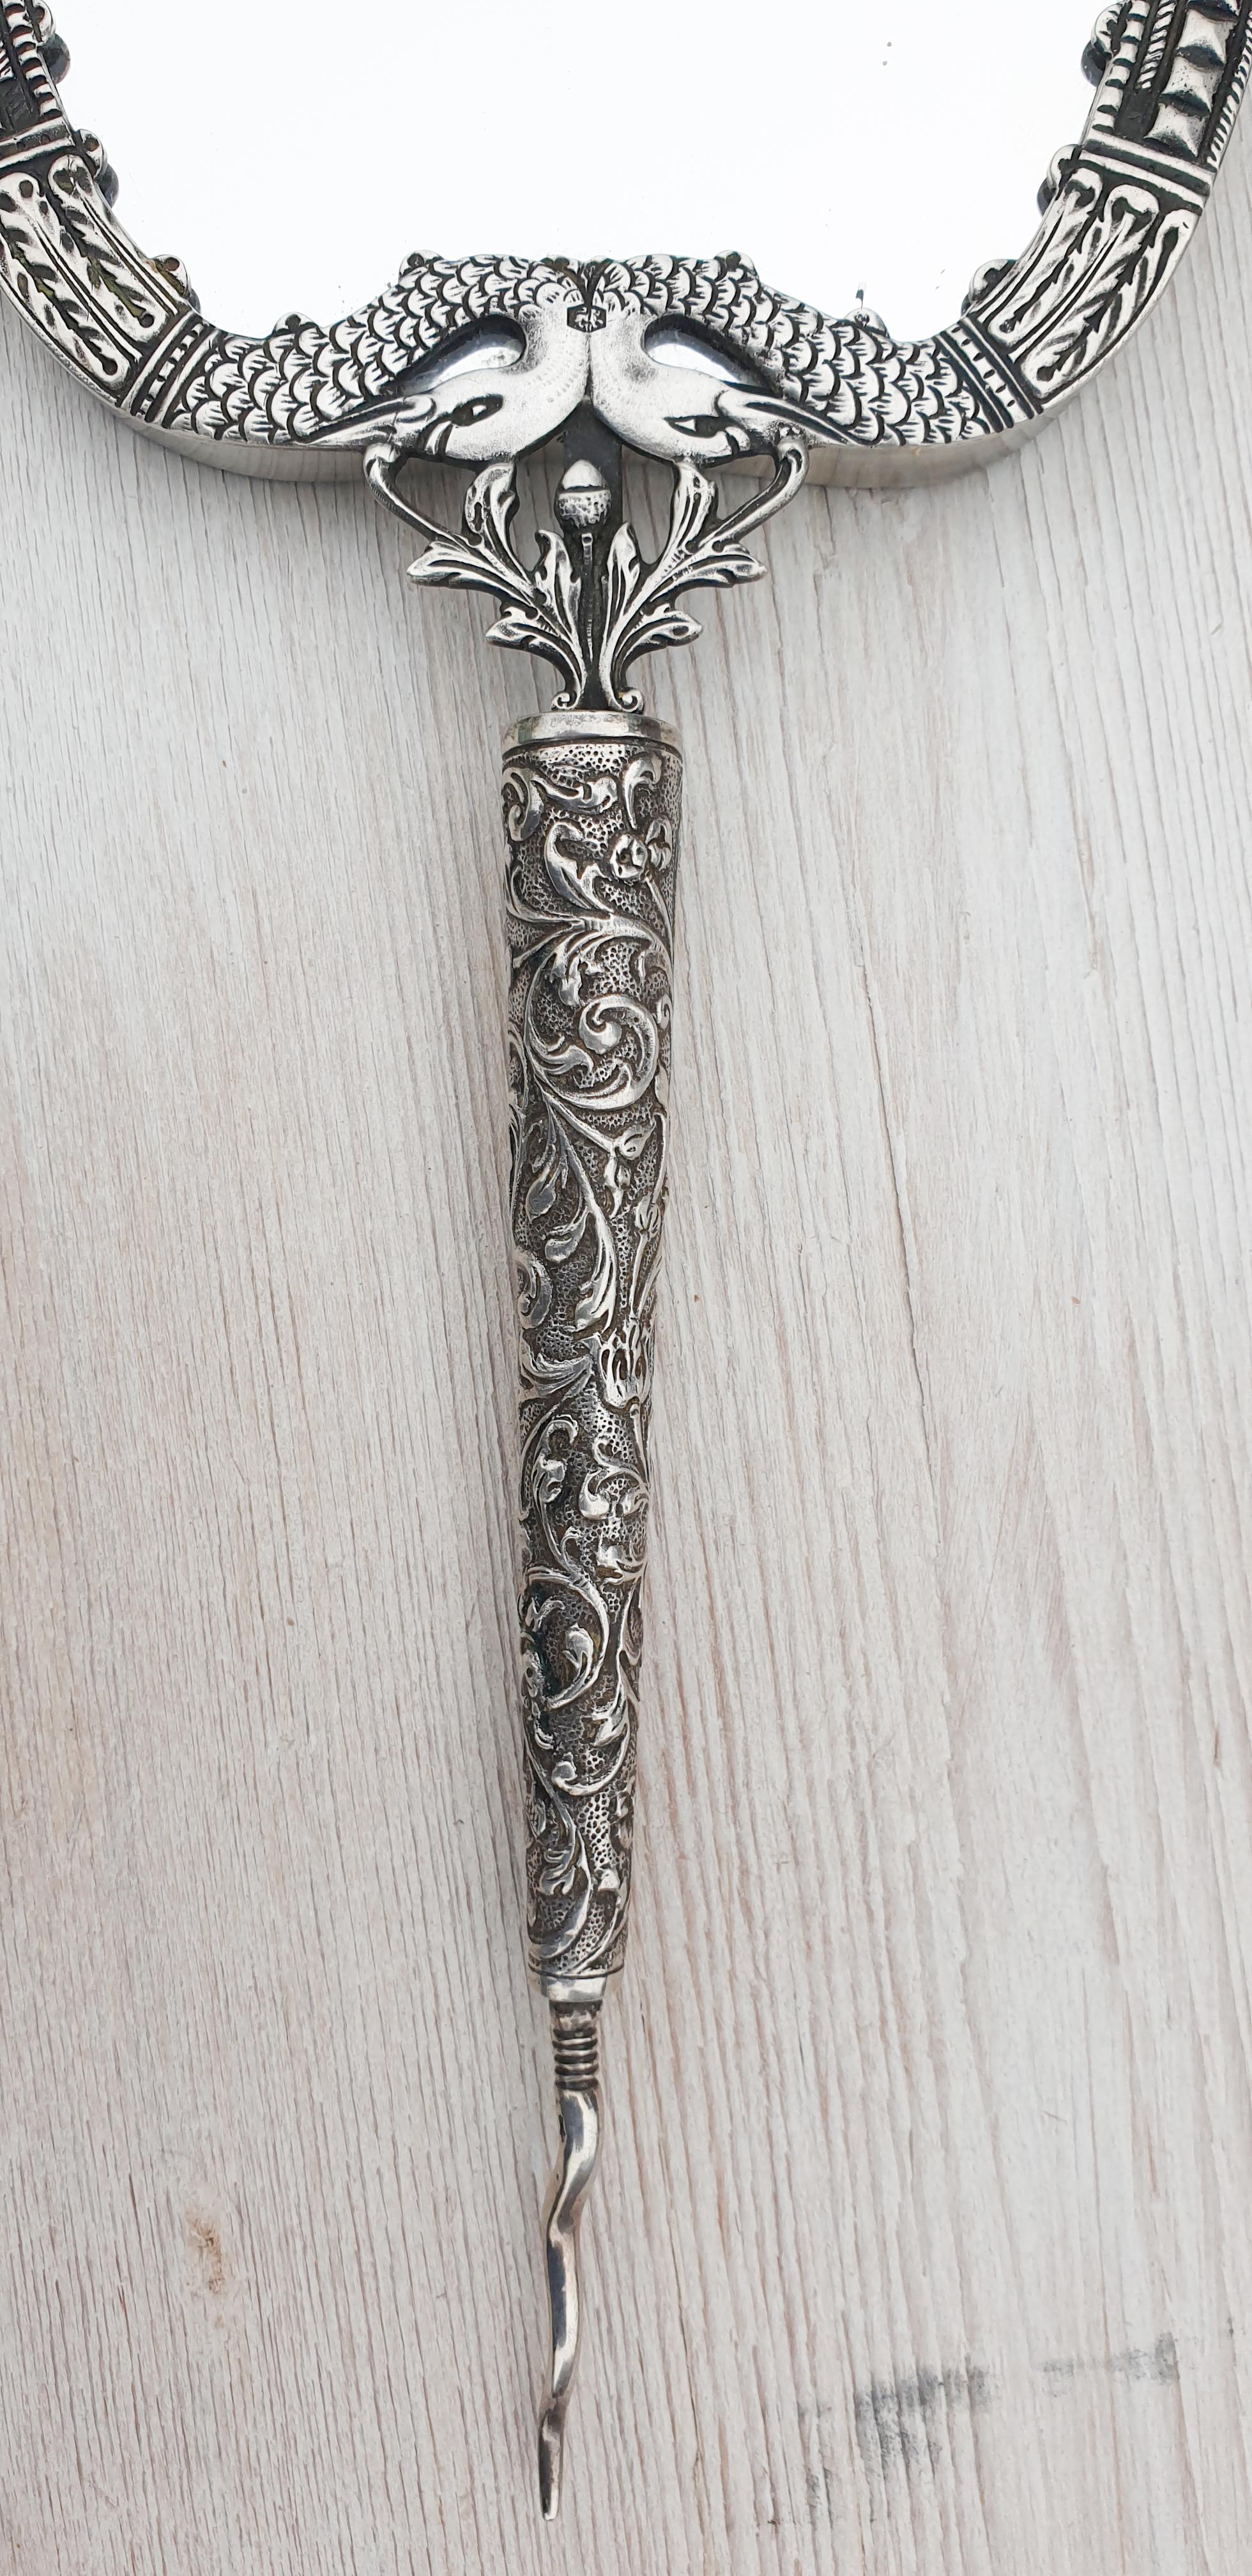 Exquisite Silber Mitte des Jahrhunderts Schwäne Hand Spiegel mit dem Jahr Buchstaben w für 1956 markiert.
Minerva Kopf mit dem a für Amsterdam.
In sehr gutem Zustand.

Maße: 31,5 cm lang und 11,5 cm breit.